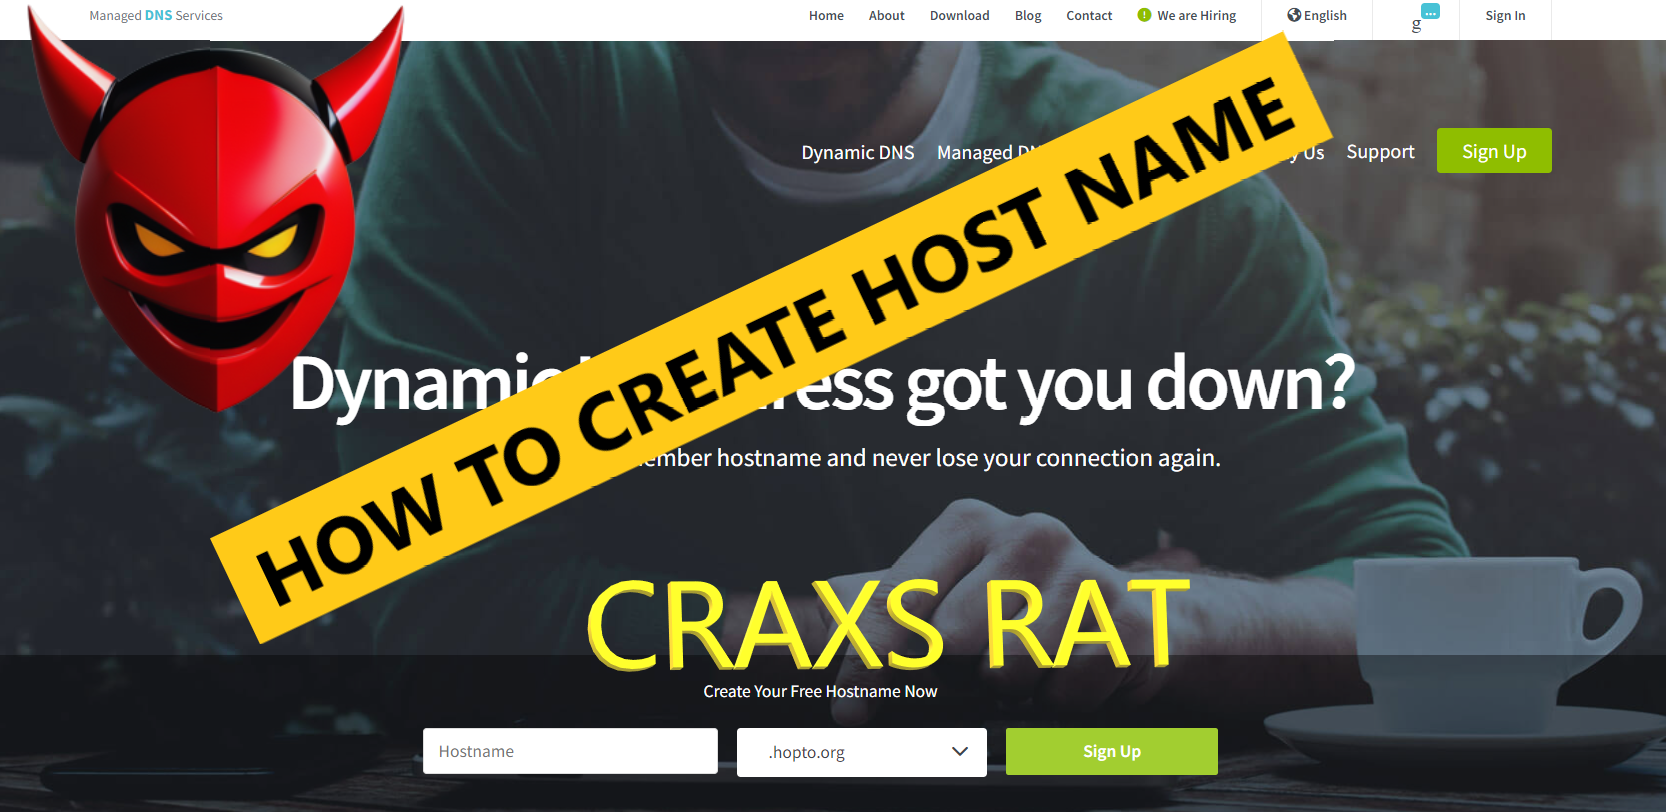 Craxs RAT HOST